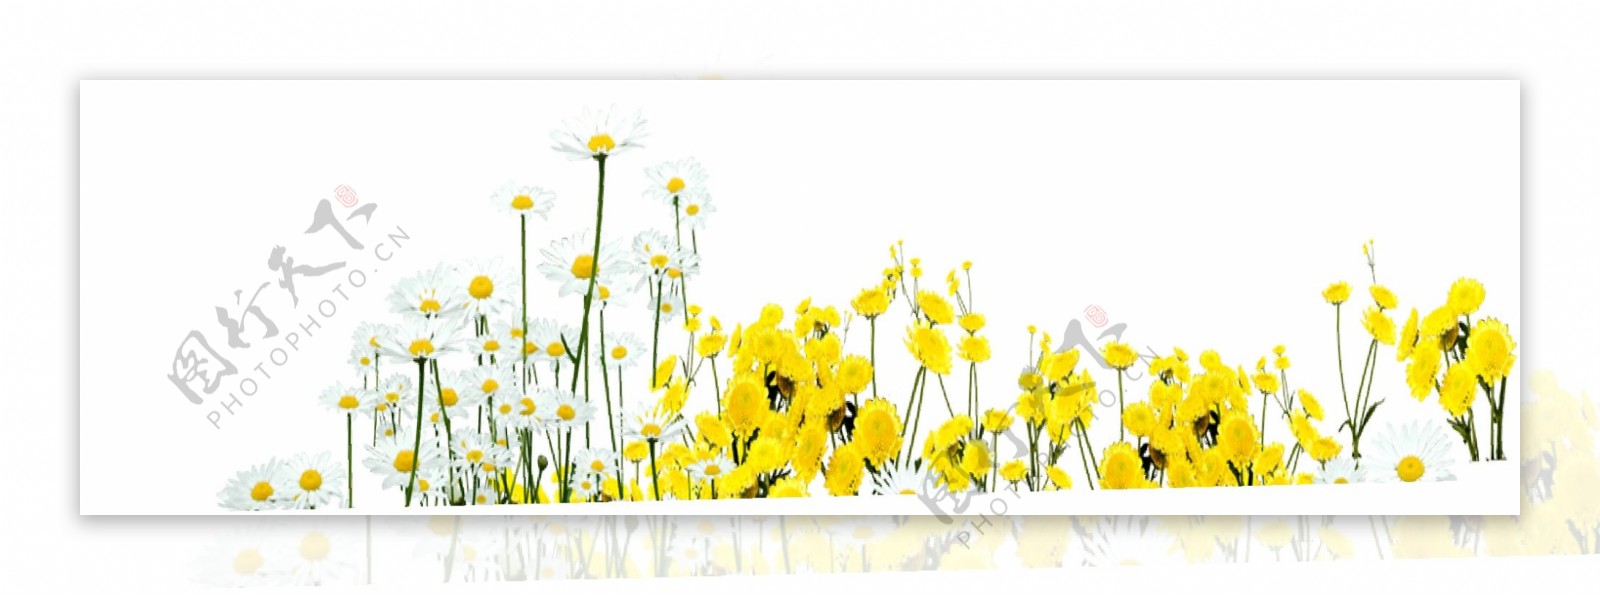 黄色花朵元素